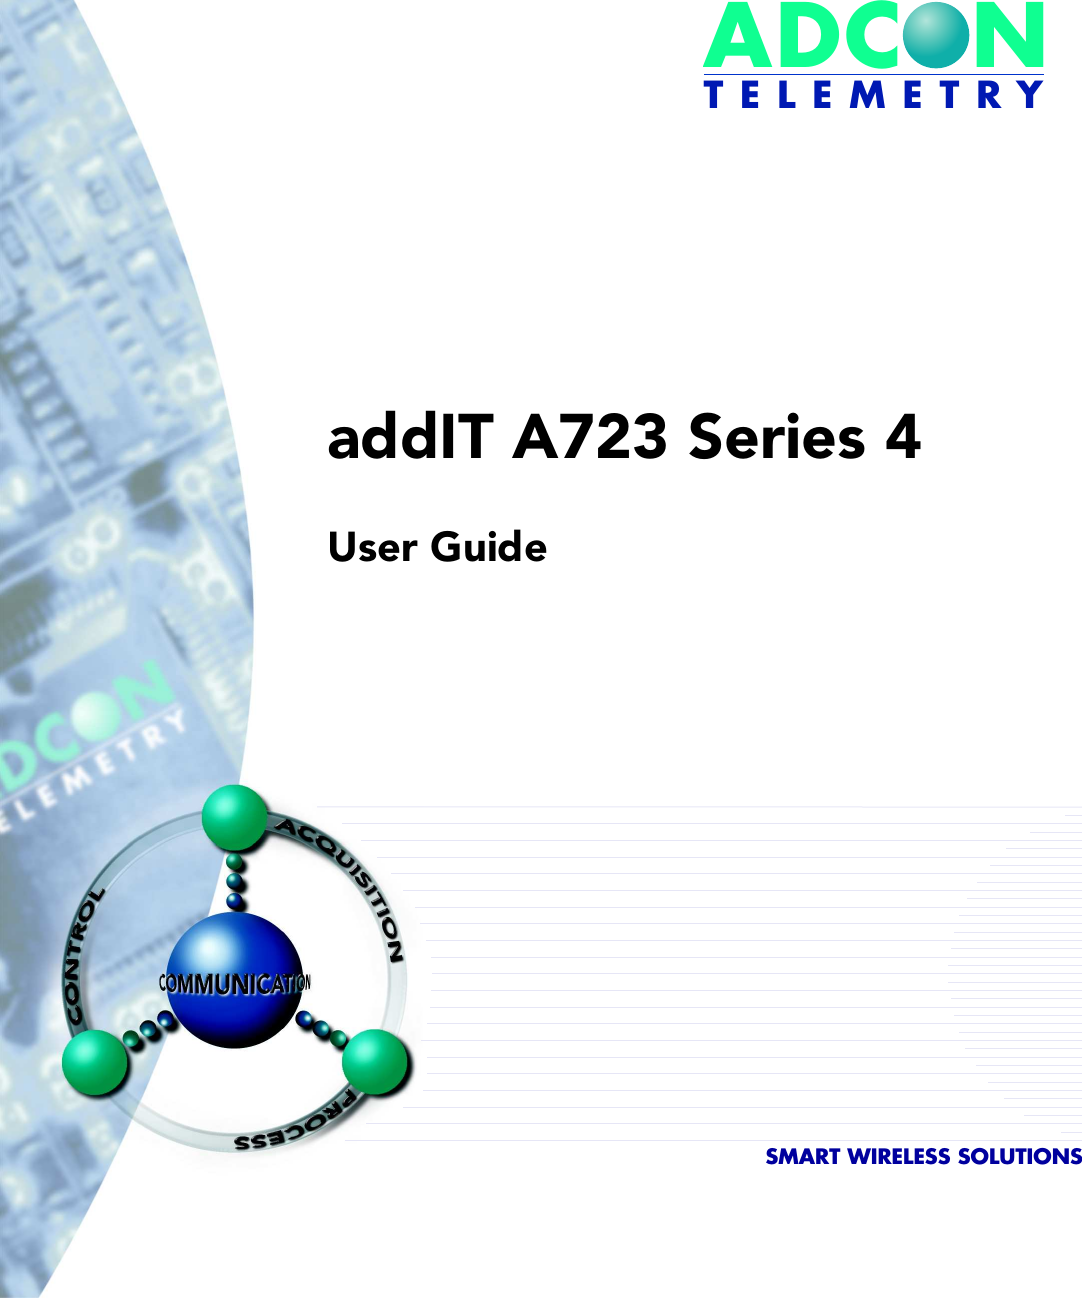 ADCONT E L E M E T R YaddIT A723 Series 4User GuideSMART WIRELESS SOLUTIONS